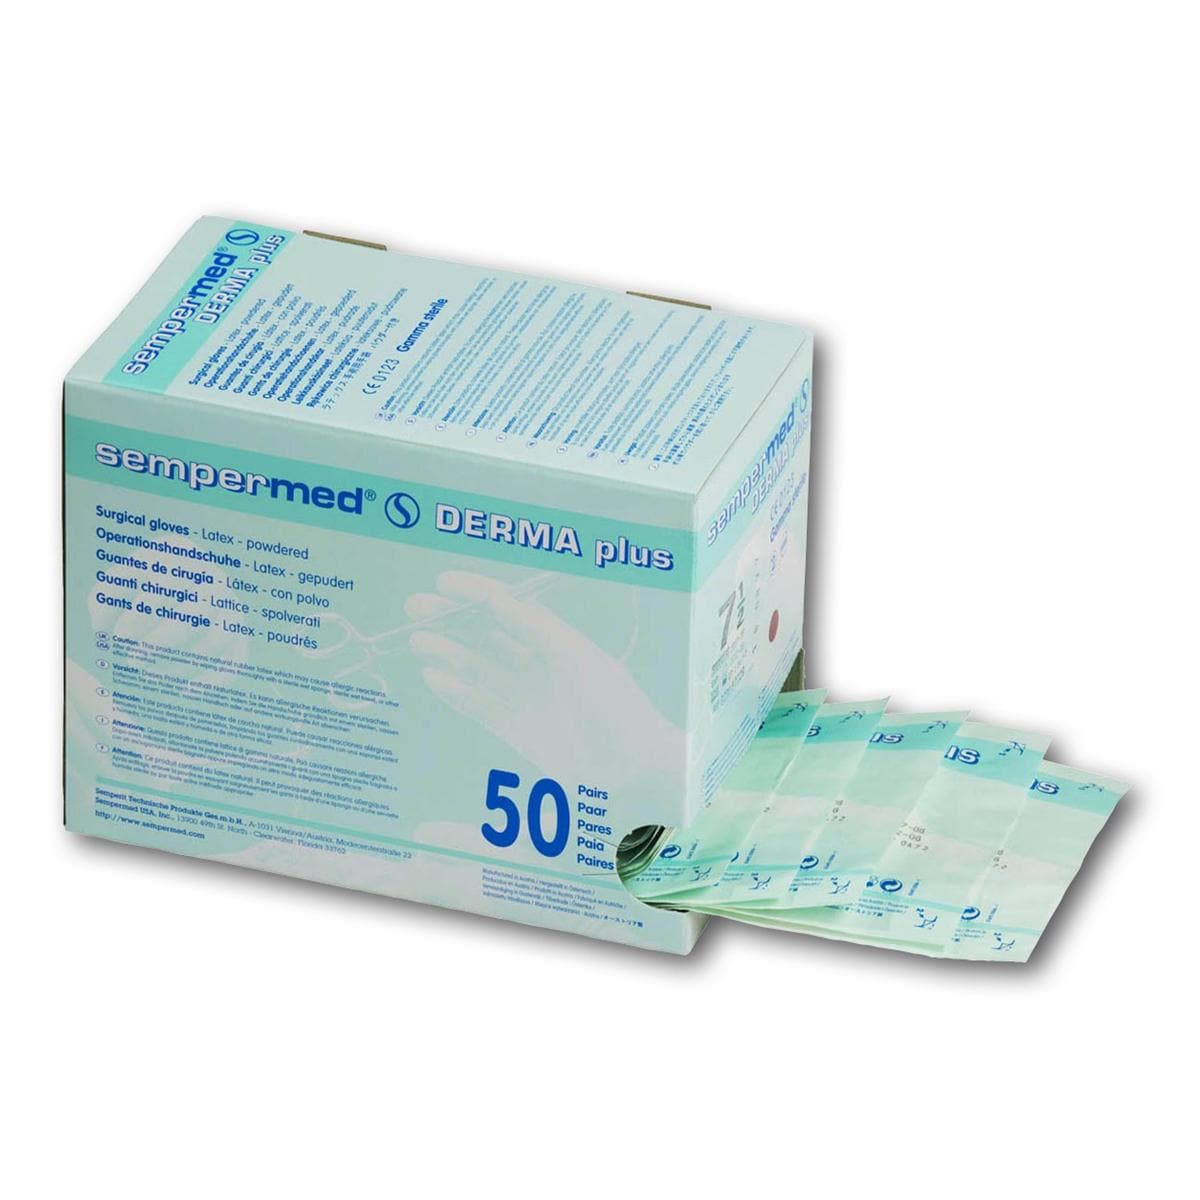 Sempermed® Derma Plus gepudert - Größe 8 1/2, Packung 50 Paar